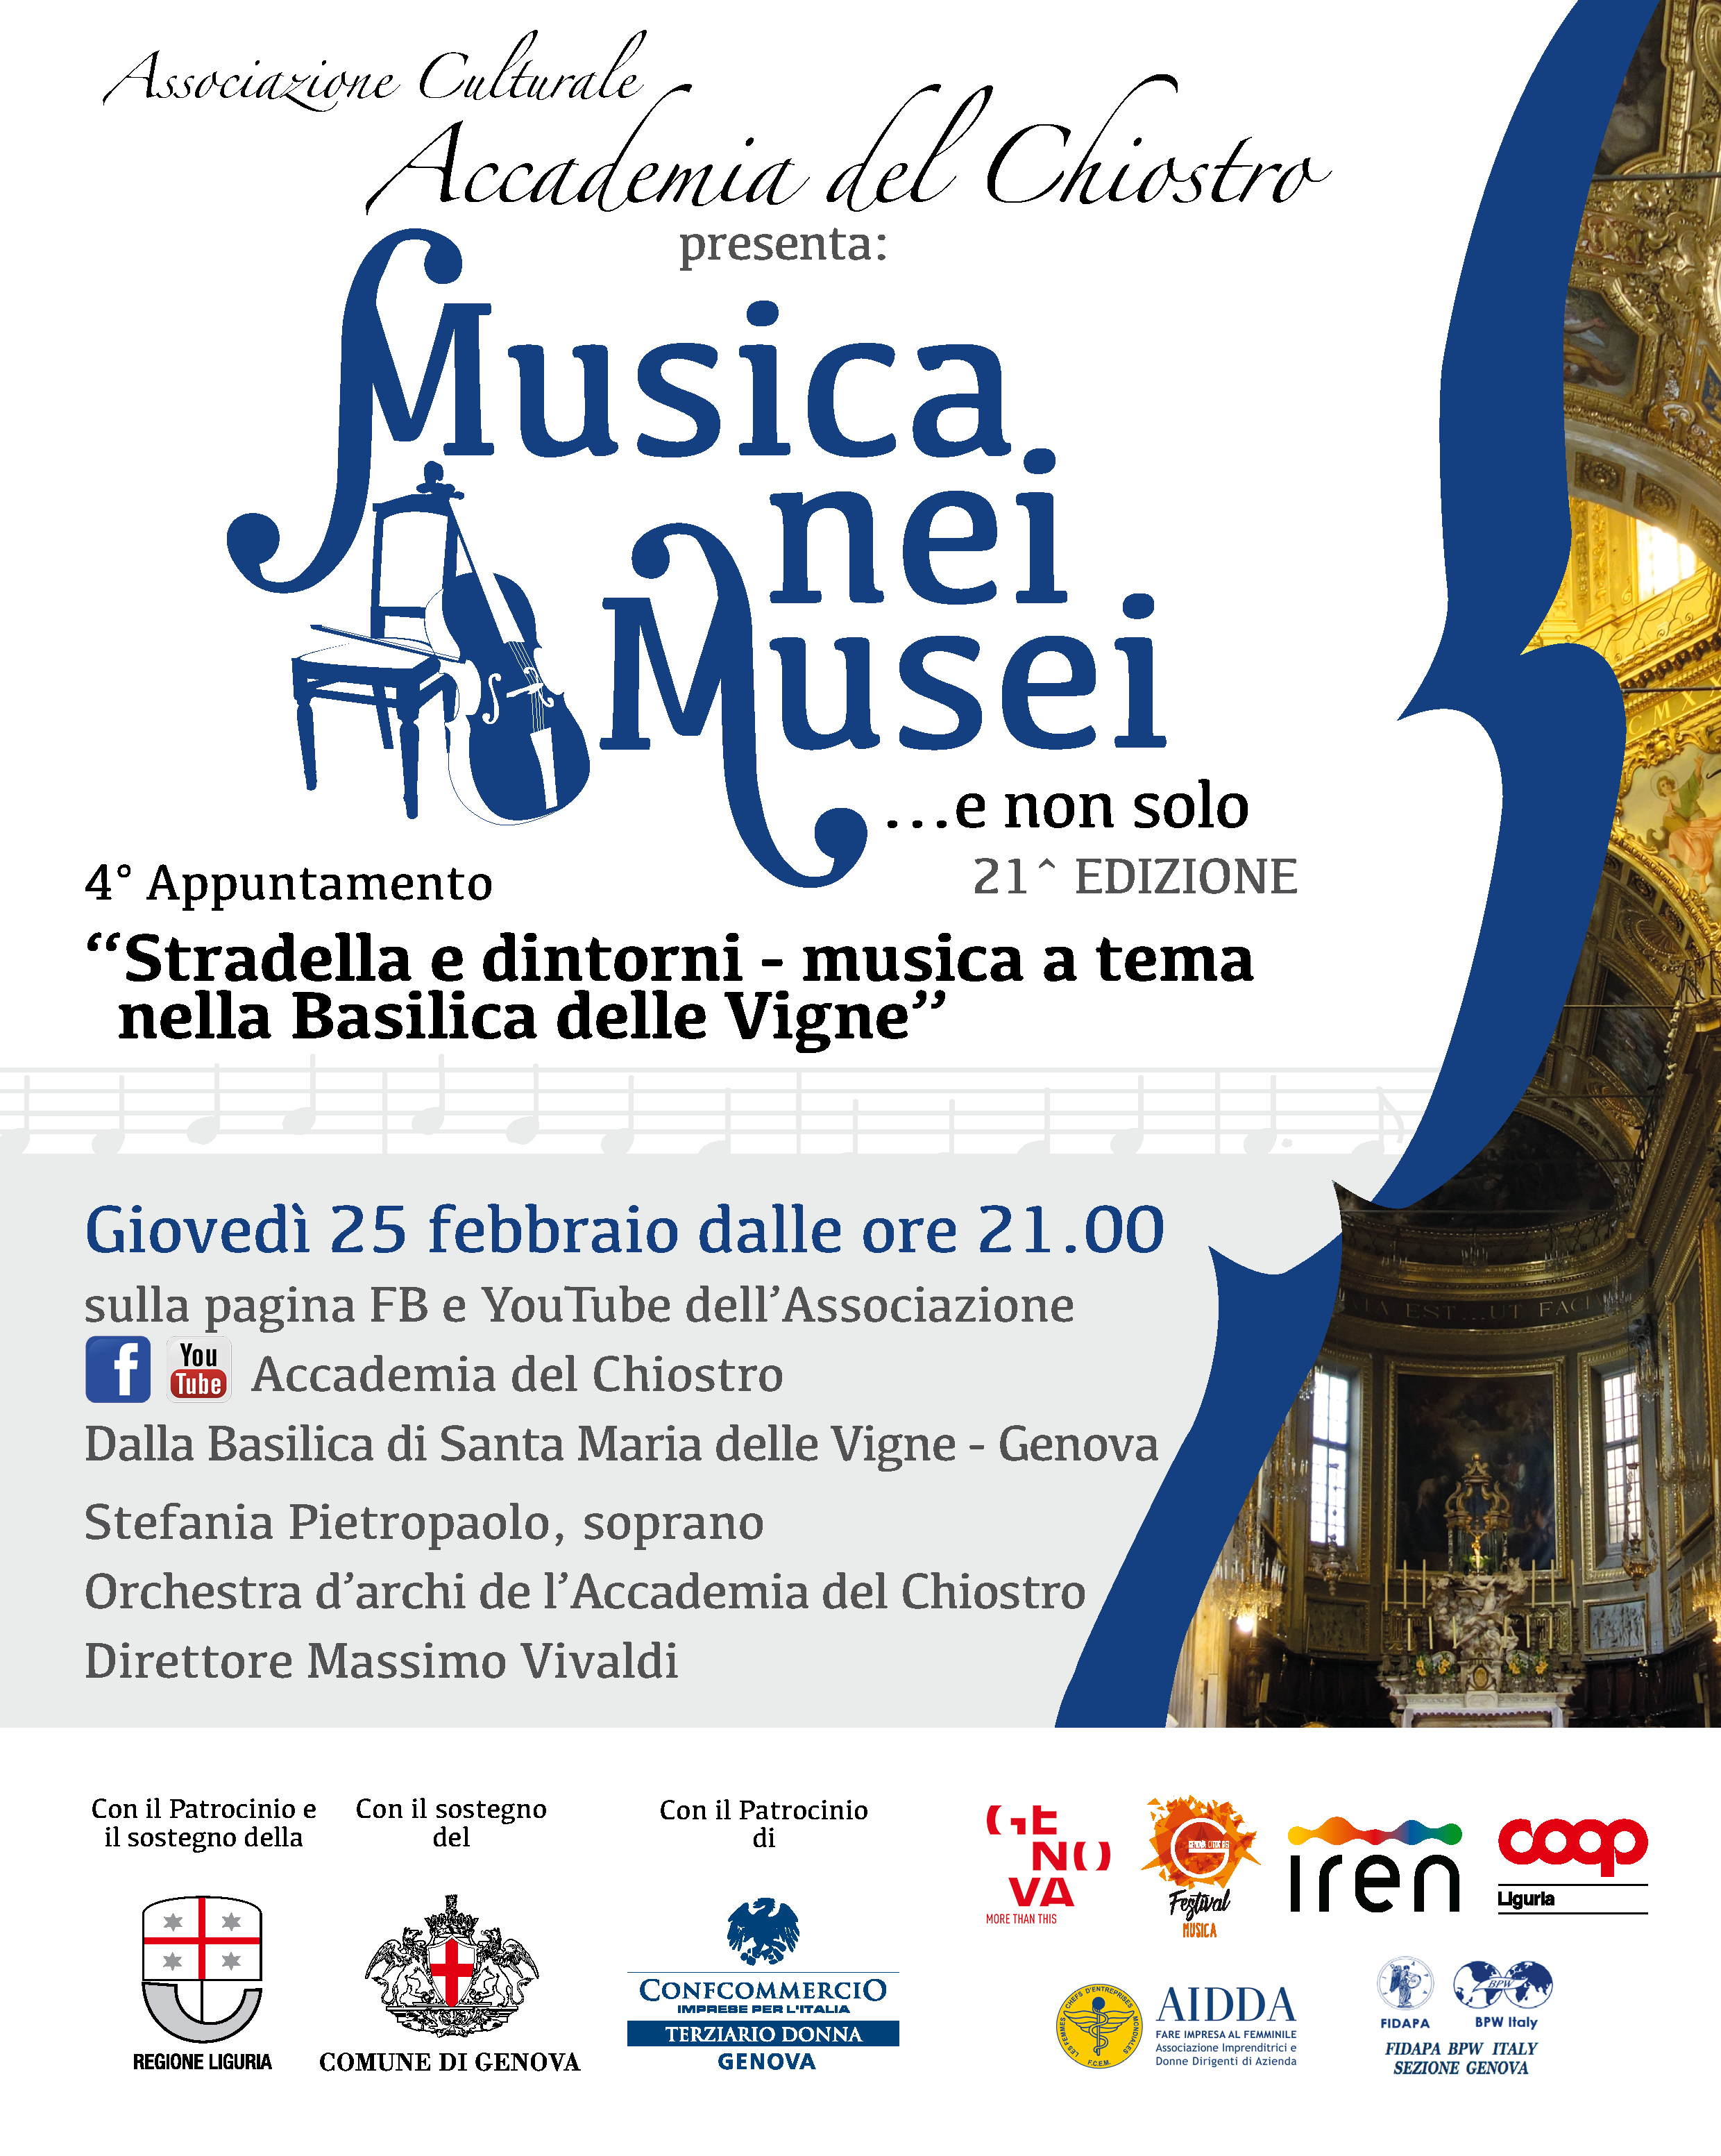 Stradella e dintorni - Musica a tema nella Basilica delle Vigne